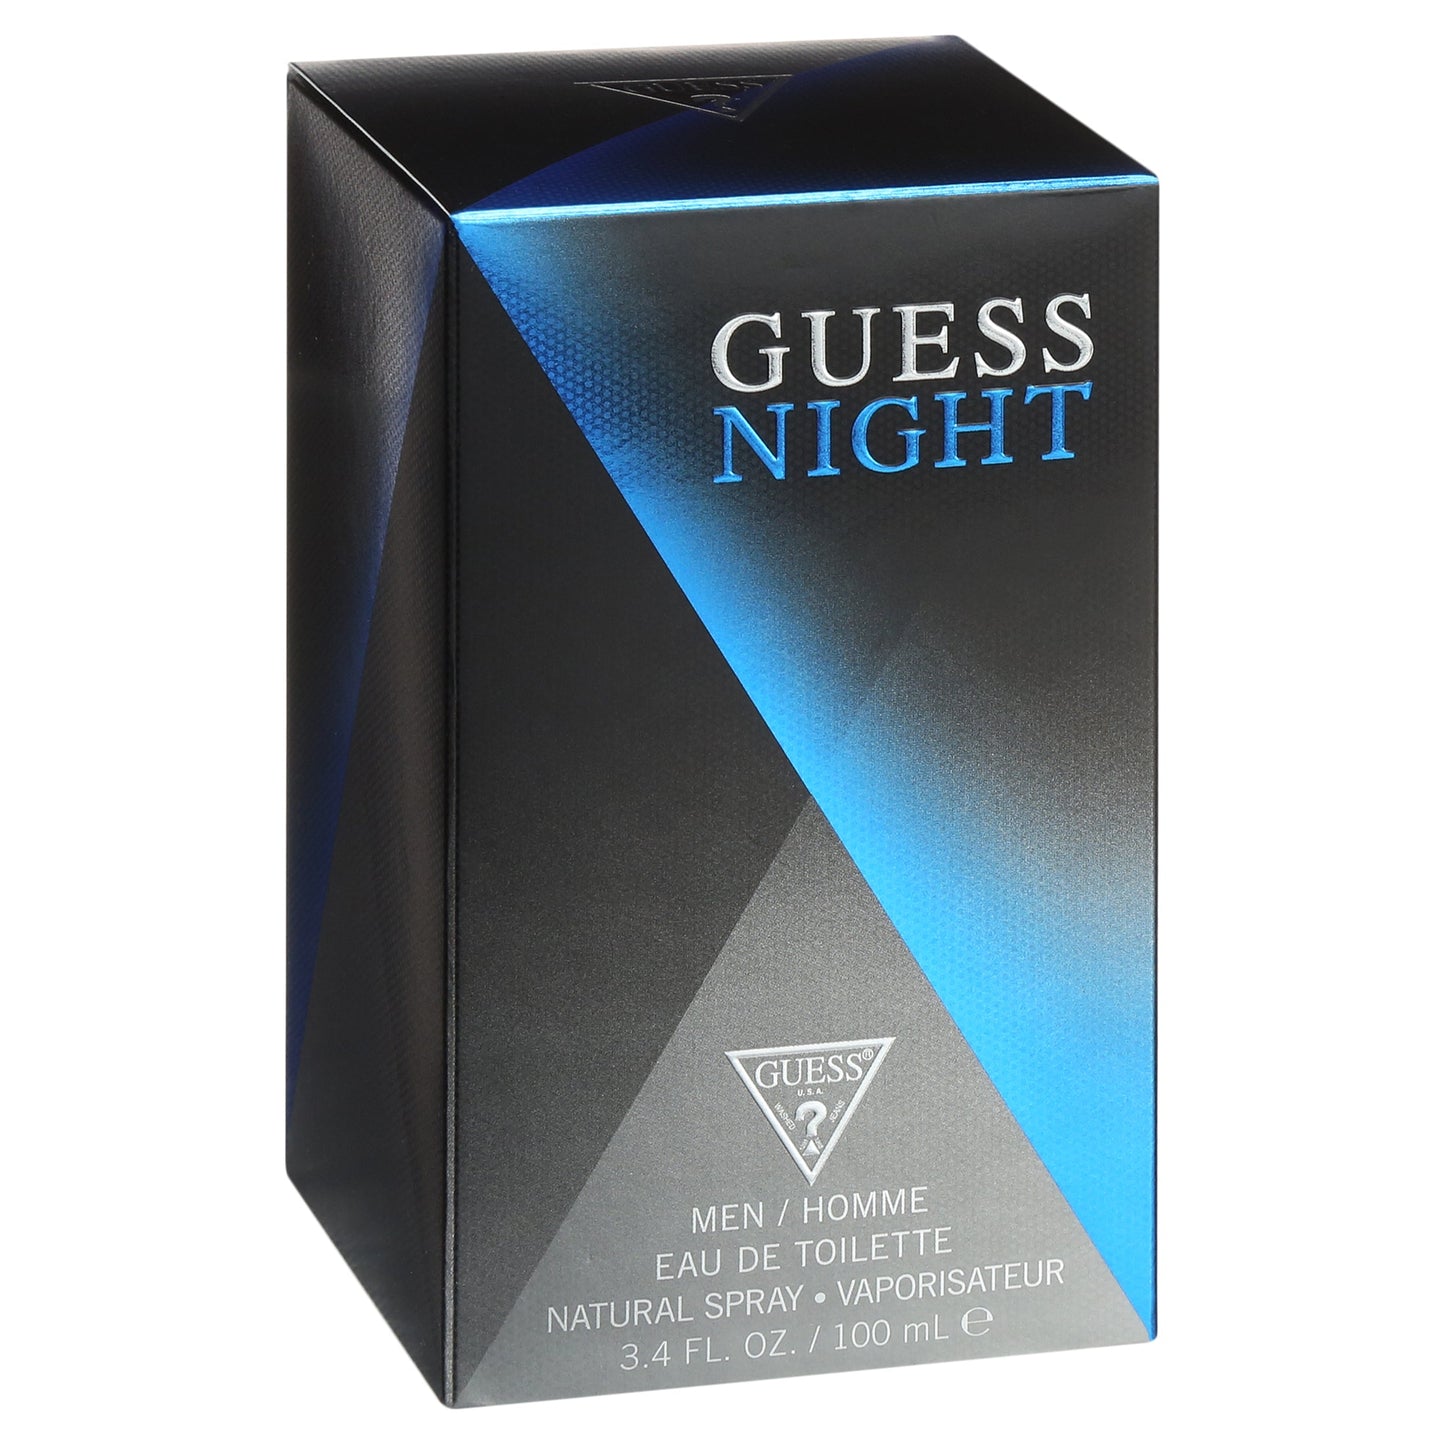 Guess Night Men/Homme Eau de Toilette 3.4 fl oz